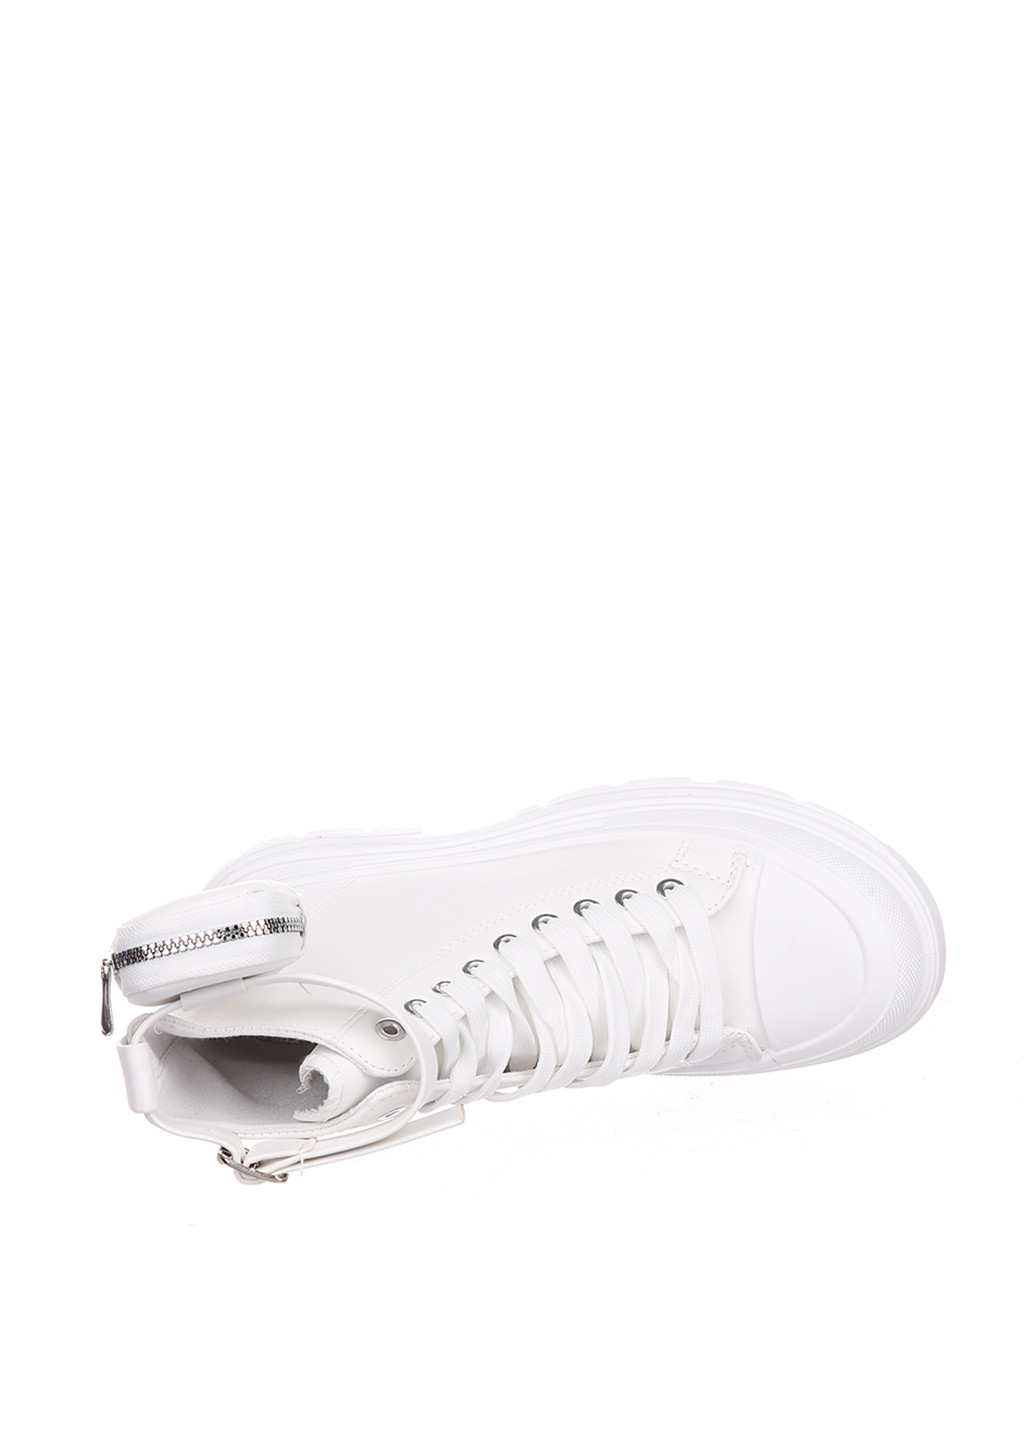 Осенние ботинки стилы Kayla с белой подошвой, кошелек из искусственной кожи